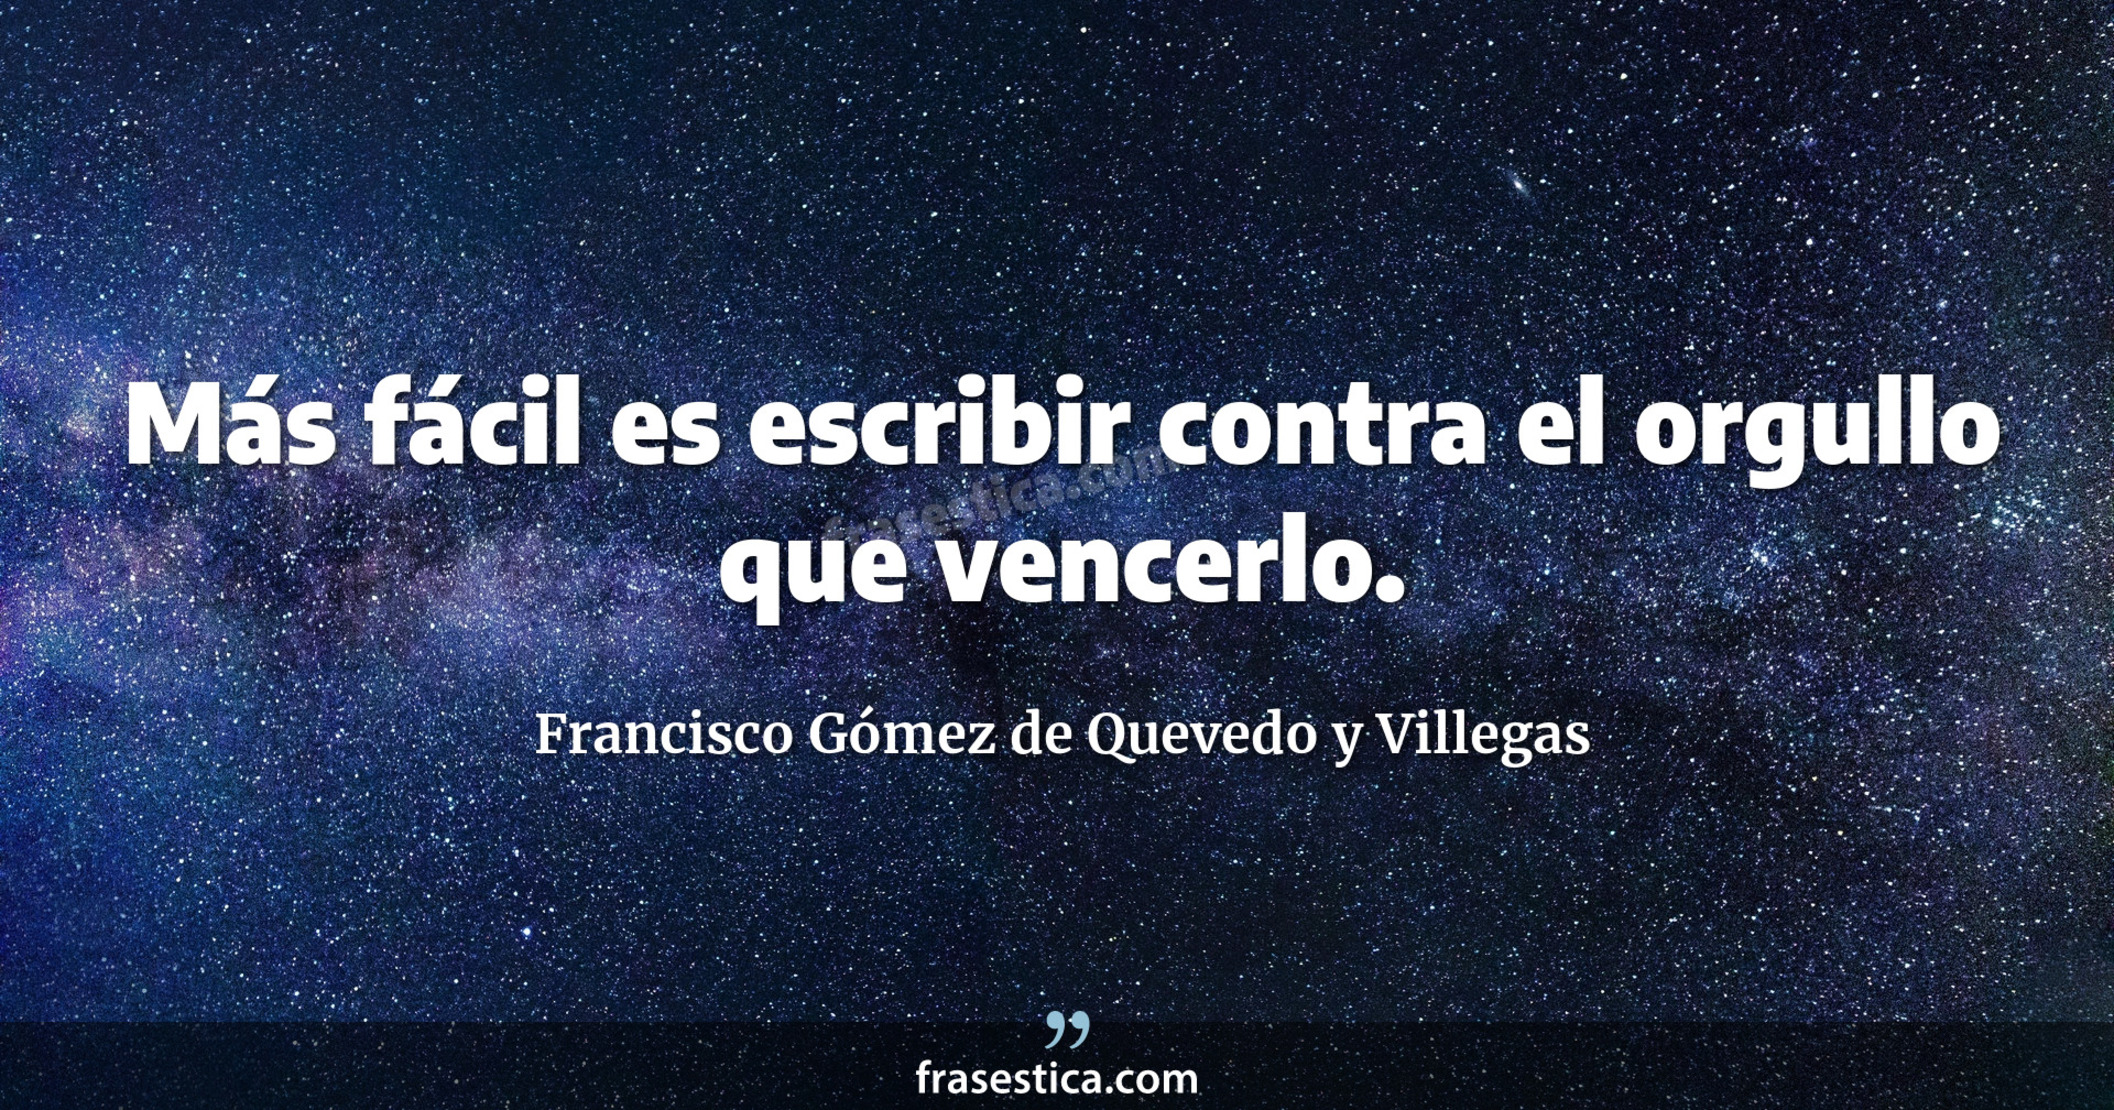 Más fácil es escribir contra el orgullo que vencerlo. - Francisco Gómez de Quevedo y Villegas